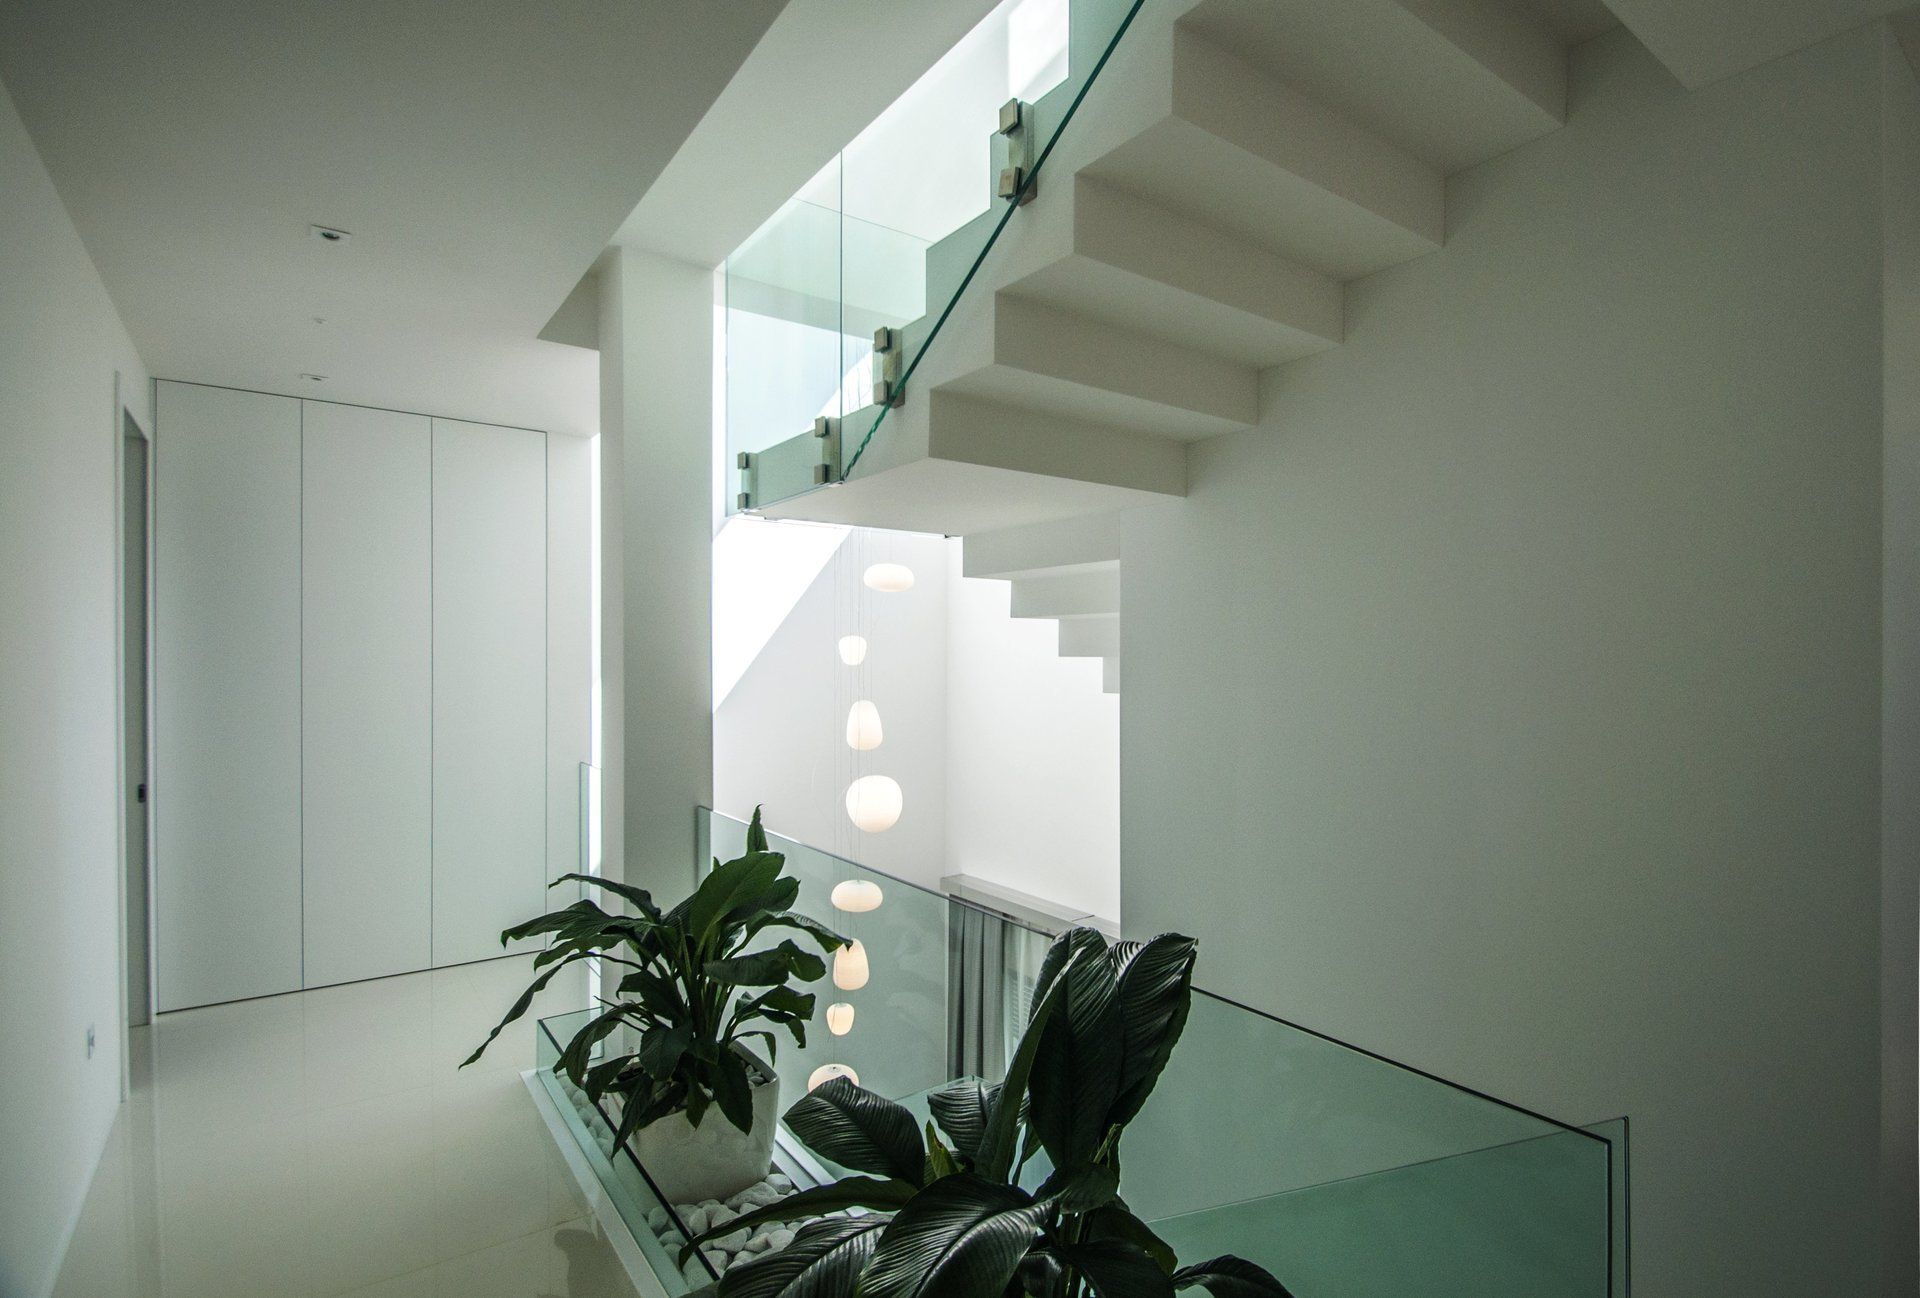 Escalera en vivienda unifamiliar moderna en Almeria. Arquitectura moderna en Almeria. Interiorismo Almeria.